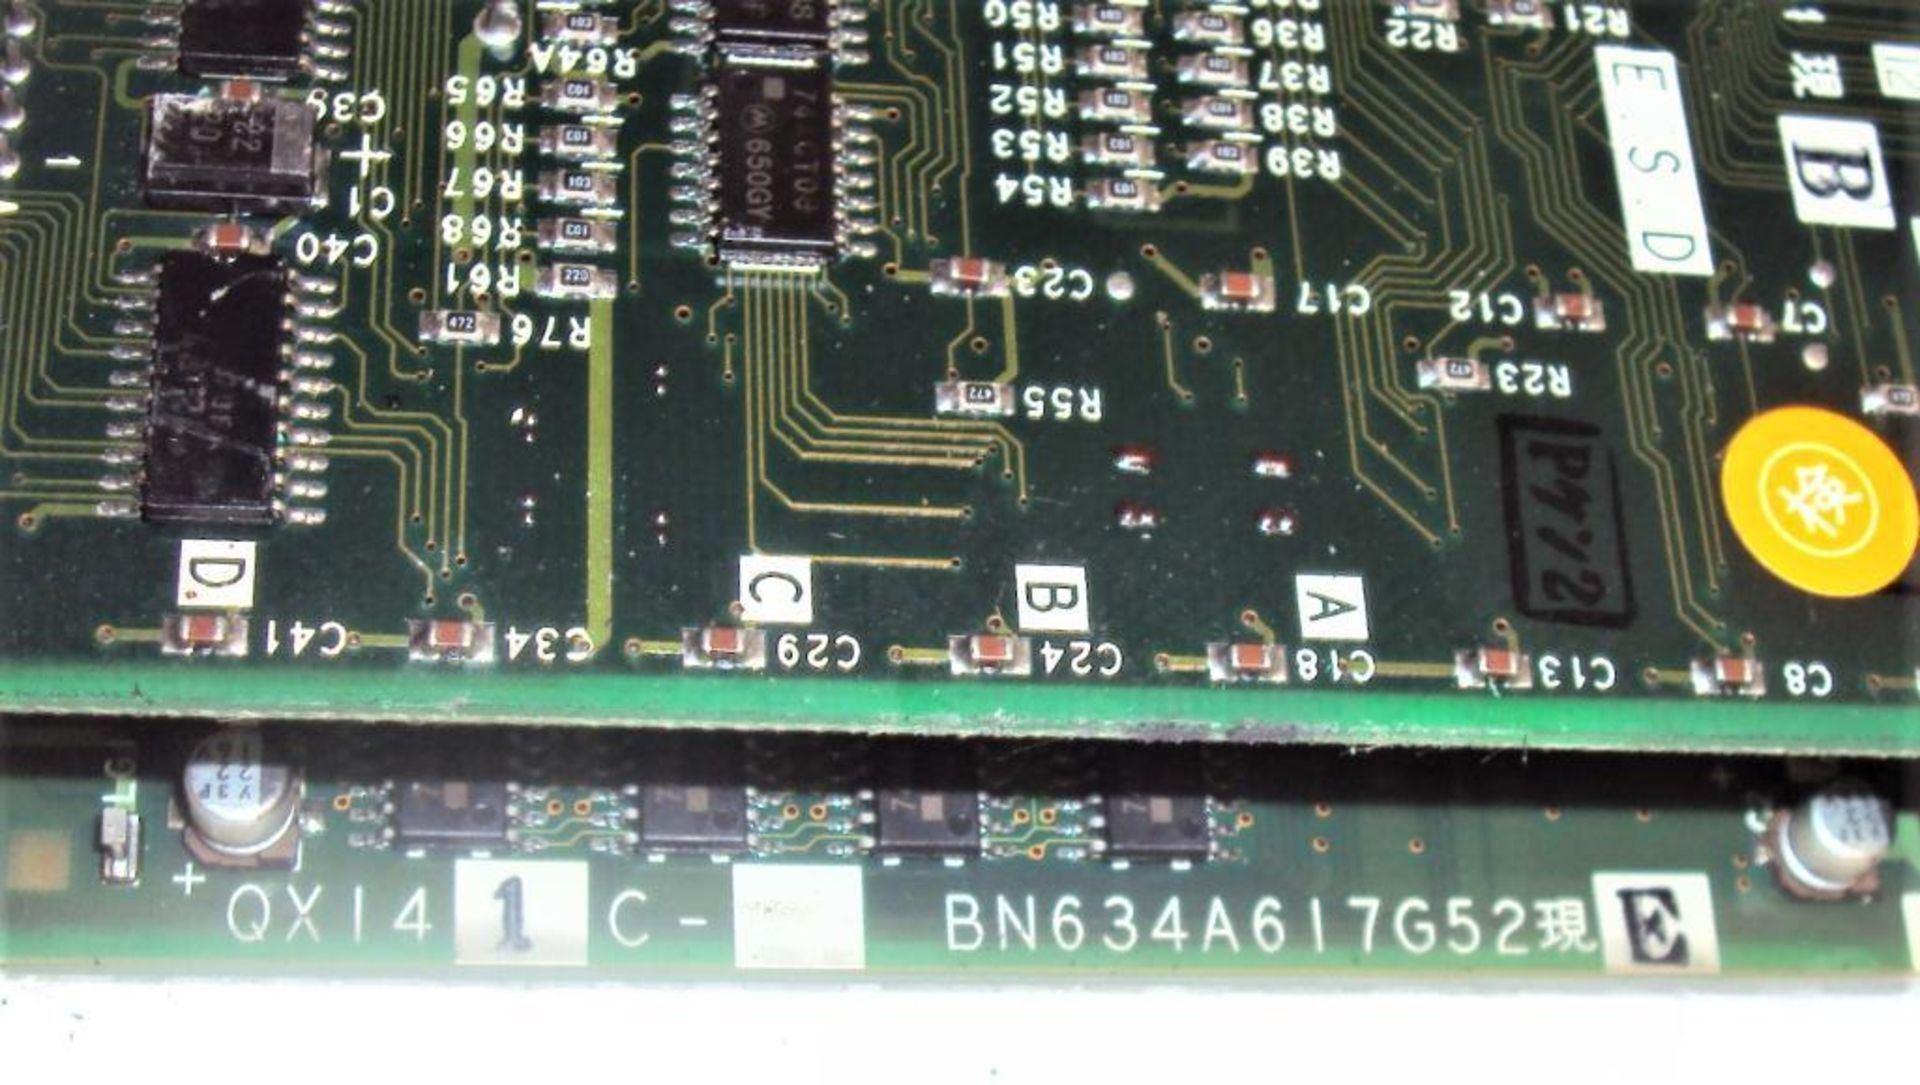 Mitsubishi Mazatrol QX141C BN634A617G52 CPU Module w/ (2) Memory Cassettes QX812 & QX818 and BN634A7 - Image 6 of 7